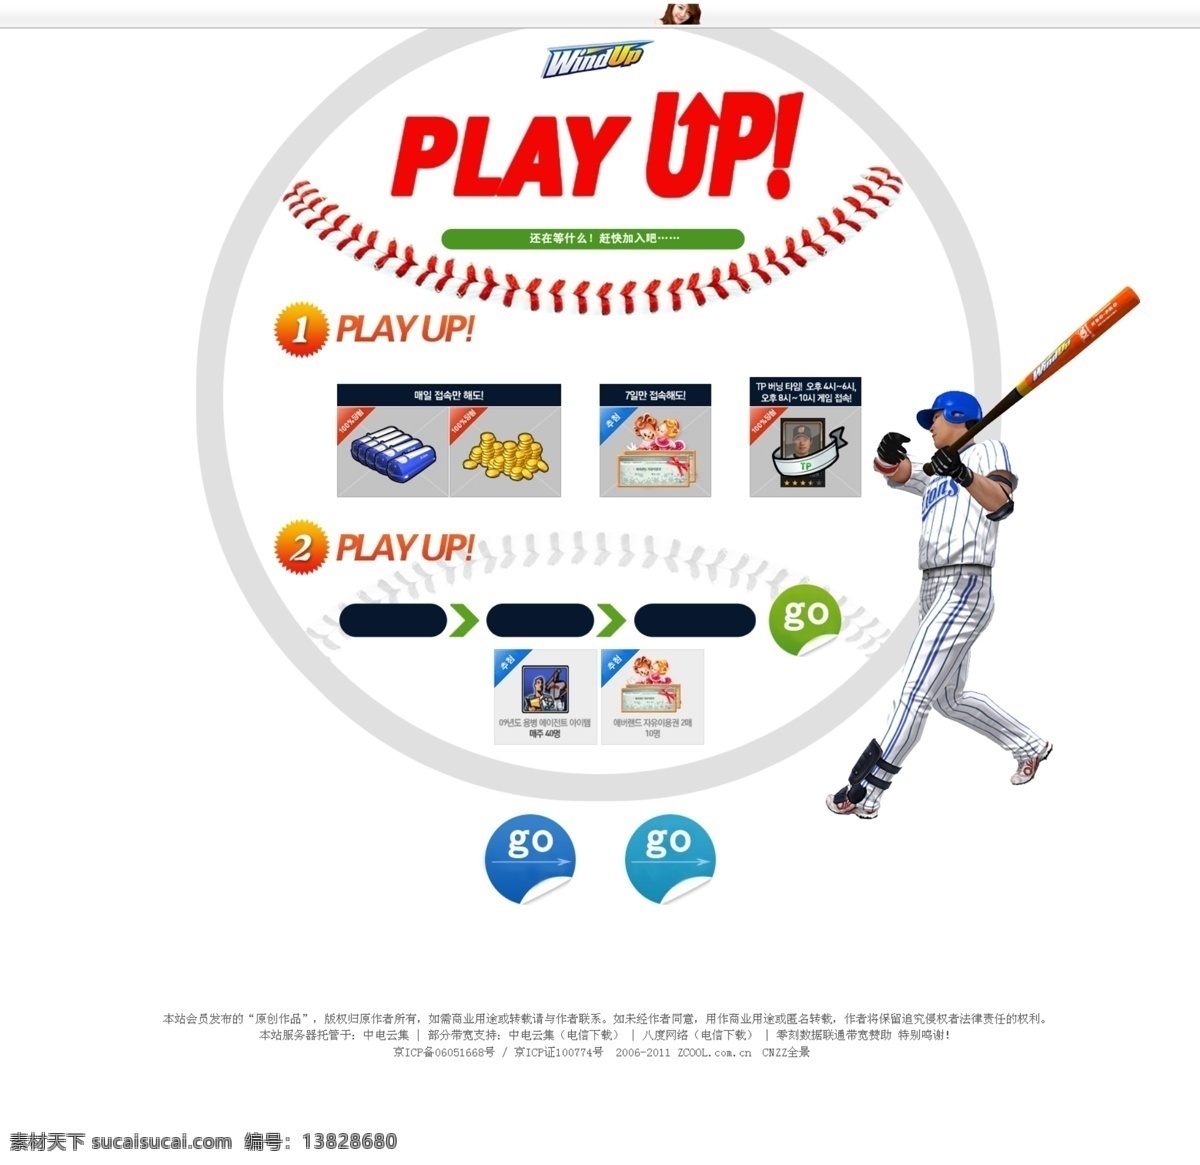 棒球 网页设计 导航条 韩国模板 人物 条纹 网页 网页模板 棒球网页设计 源文件 网页素材